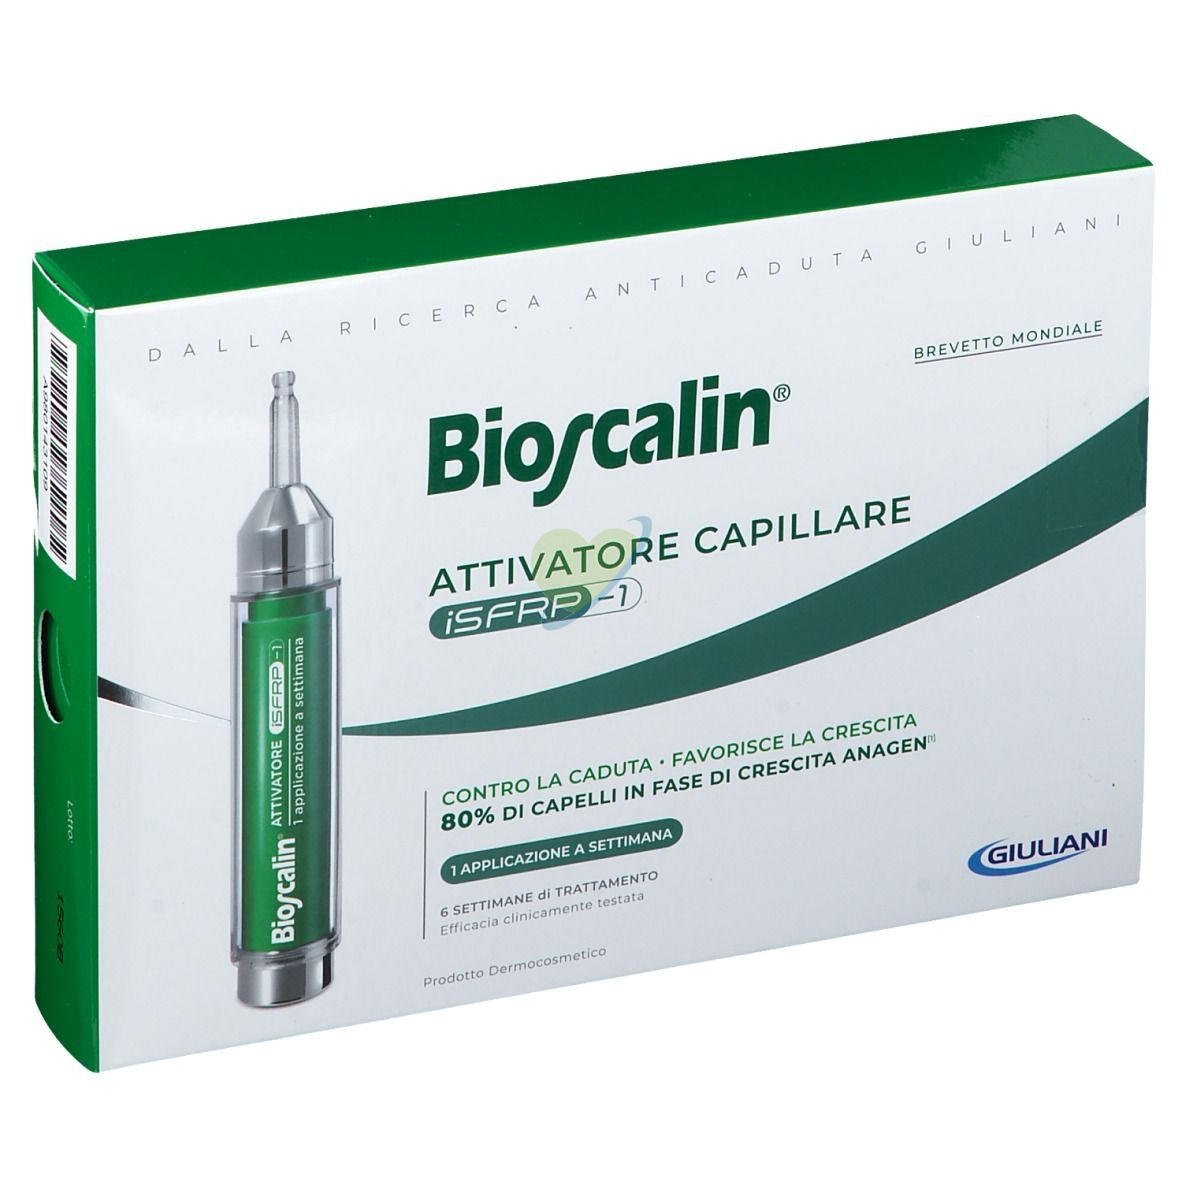 Bioscalin Attivatore Capillare iSFRP-1 Trattamento Anti-caduta 6 sett. 10ml